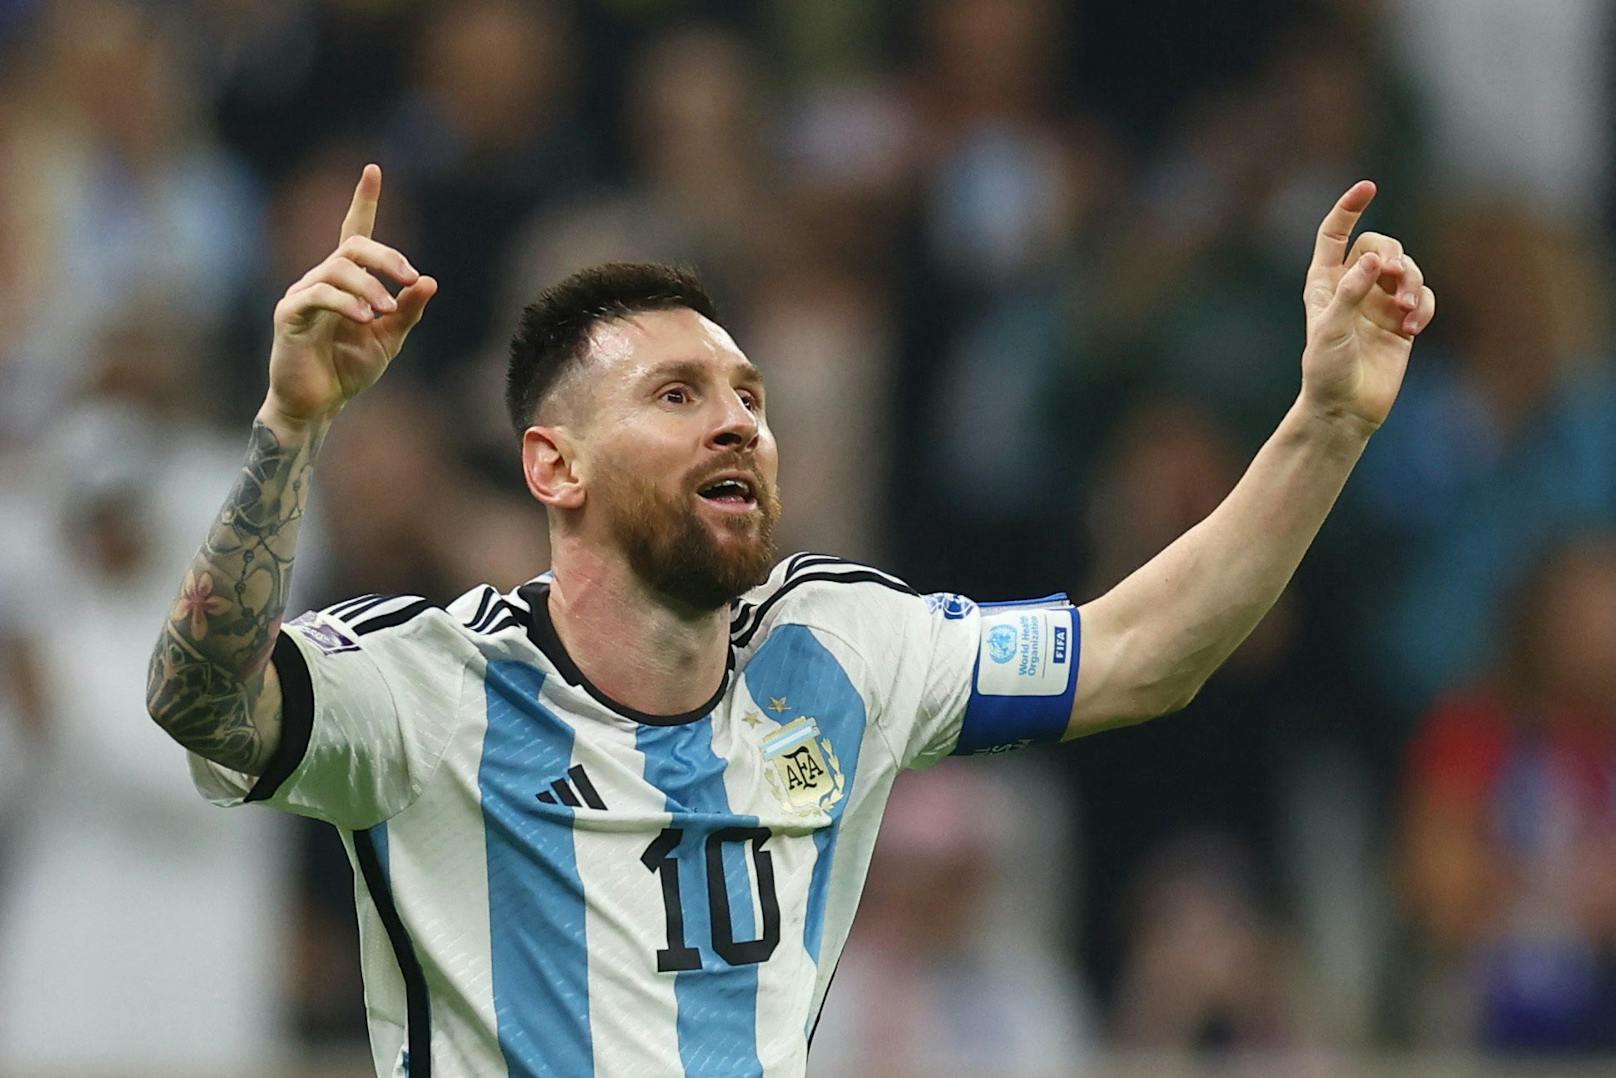 Lionel Messi vergoldet seine Traumkarriere. Argentinien gewinnt nach Elfern 7:5. Messi, Dybala, Paredes und Montiel treffen vom Punkt. Coman und Tchouameni vergeben für Frankreich.